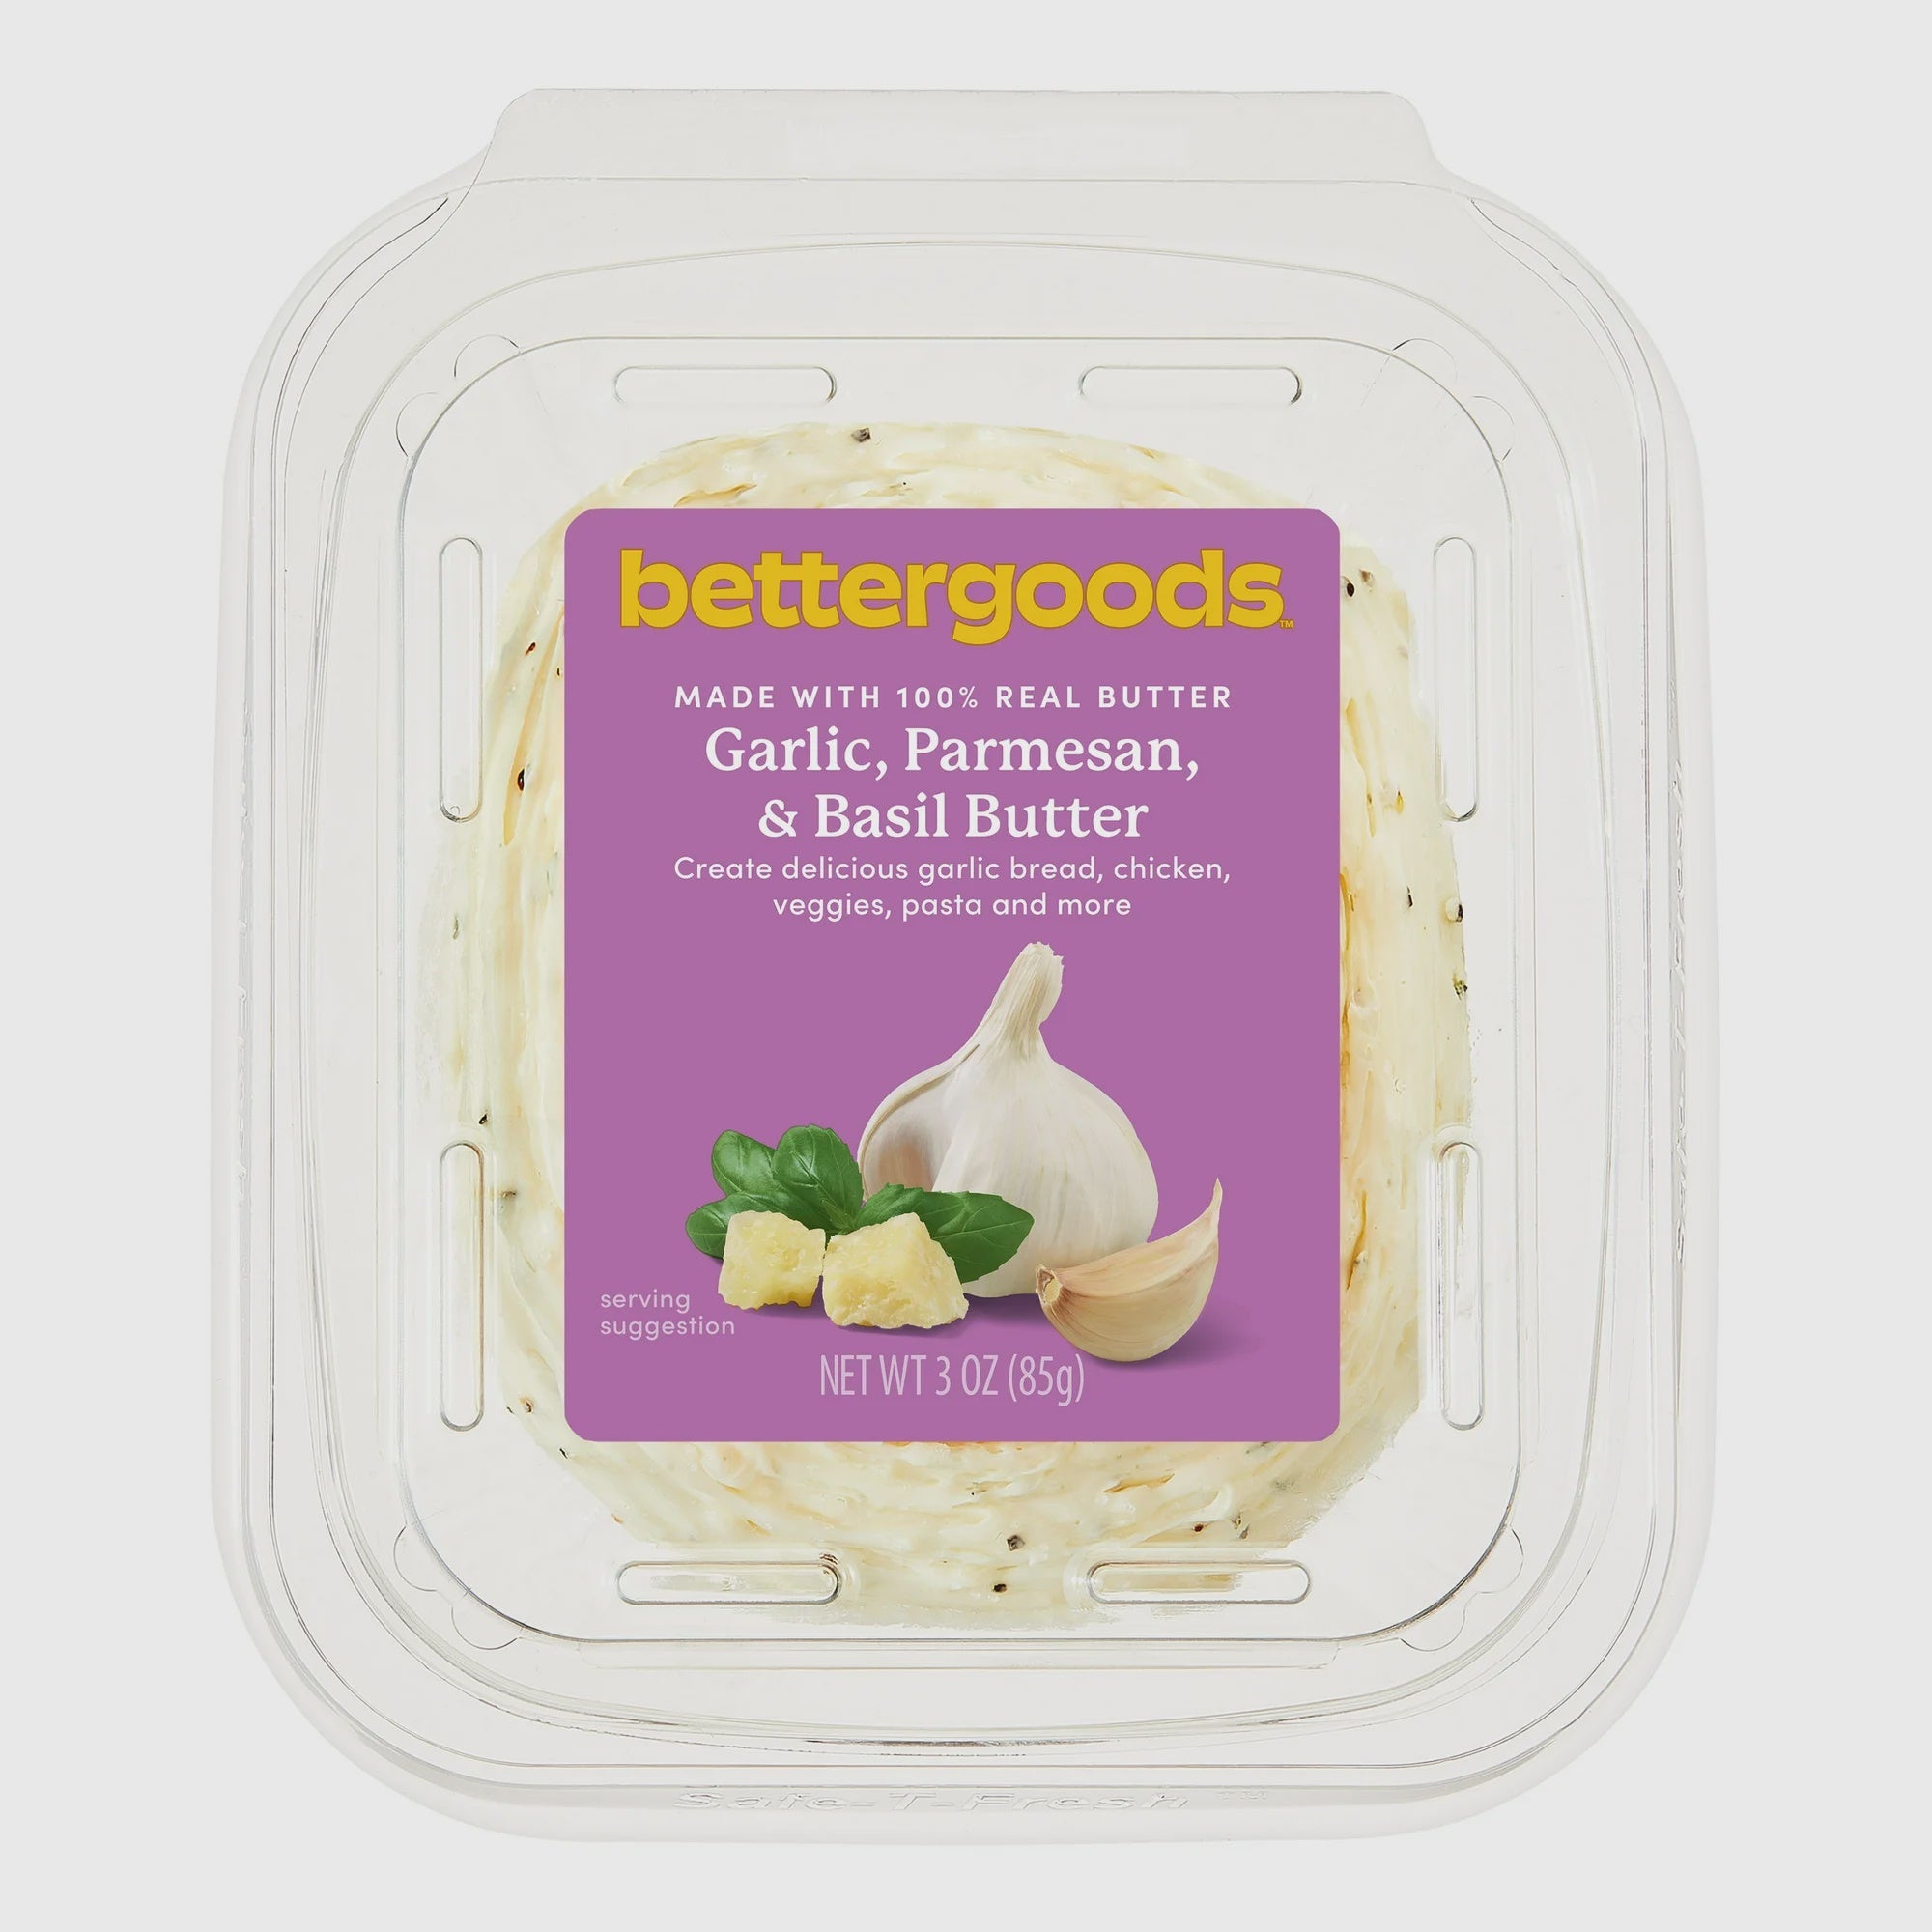 bettergoods Garlic, Parmesan & Basil Butter, 3 oz